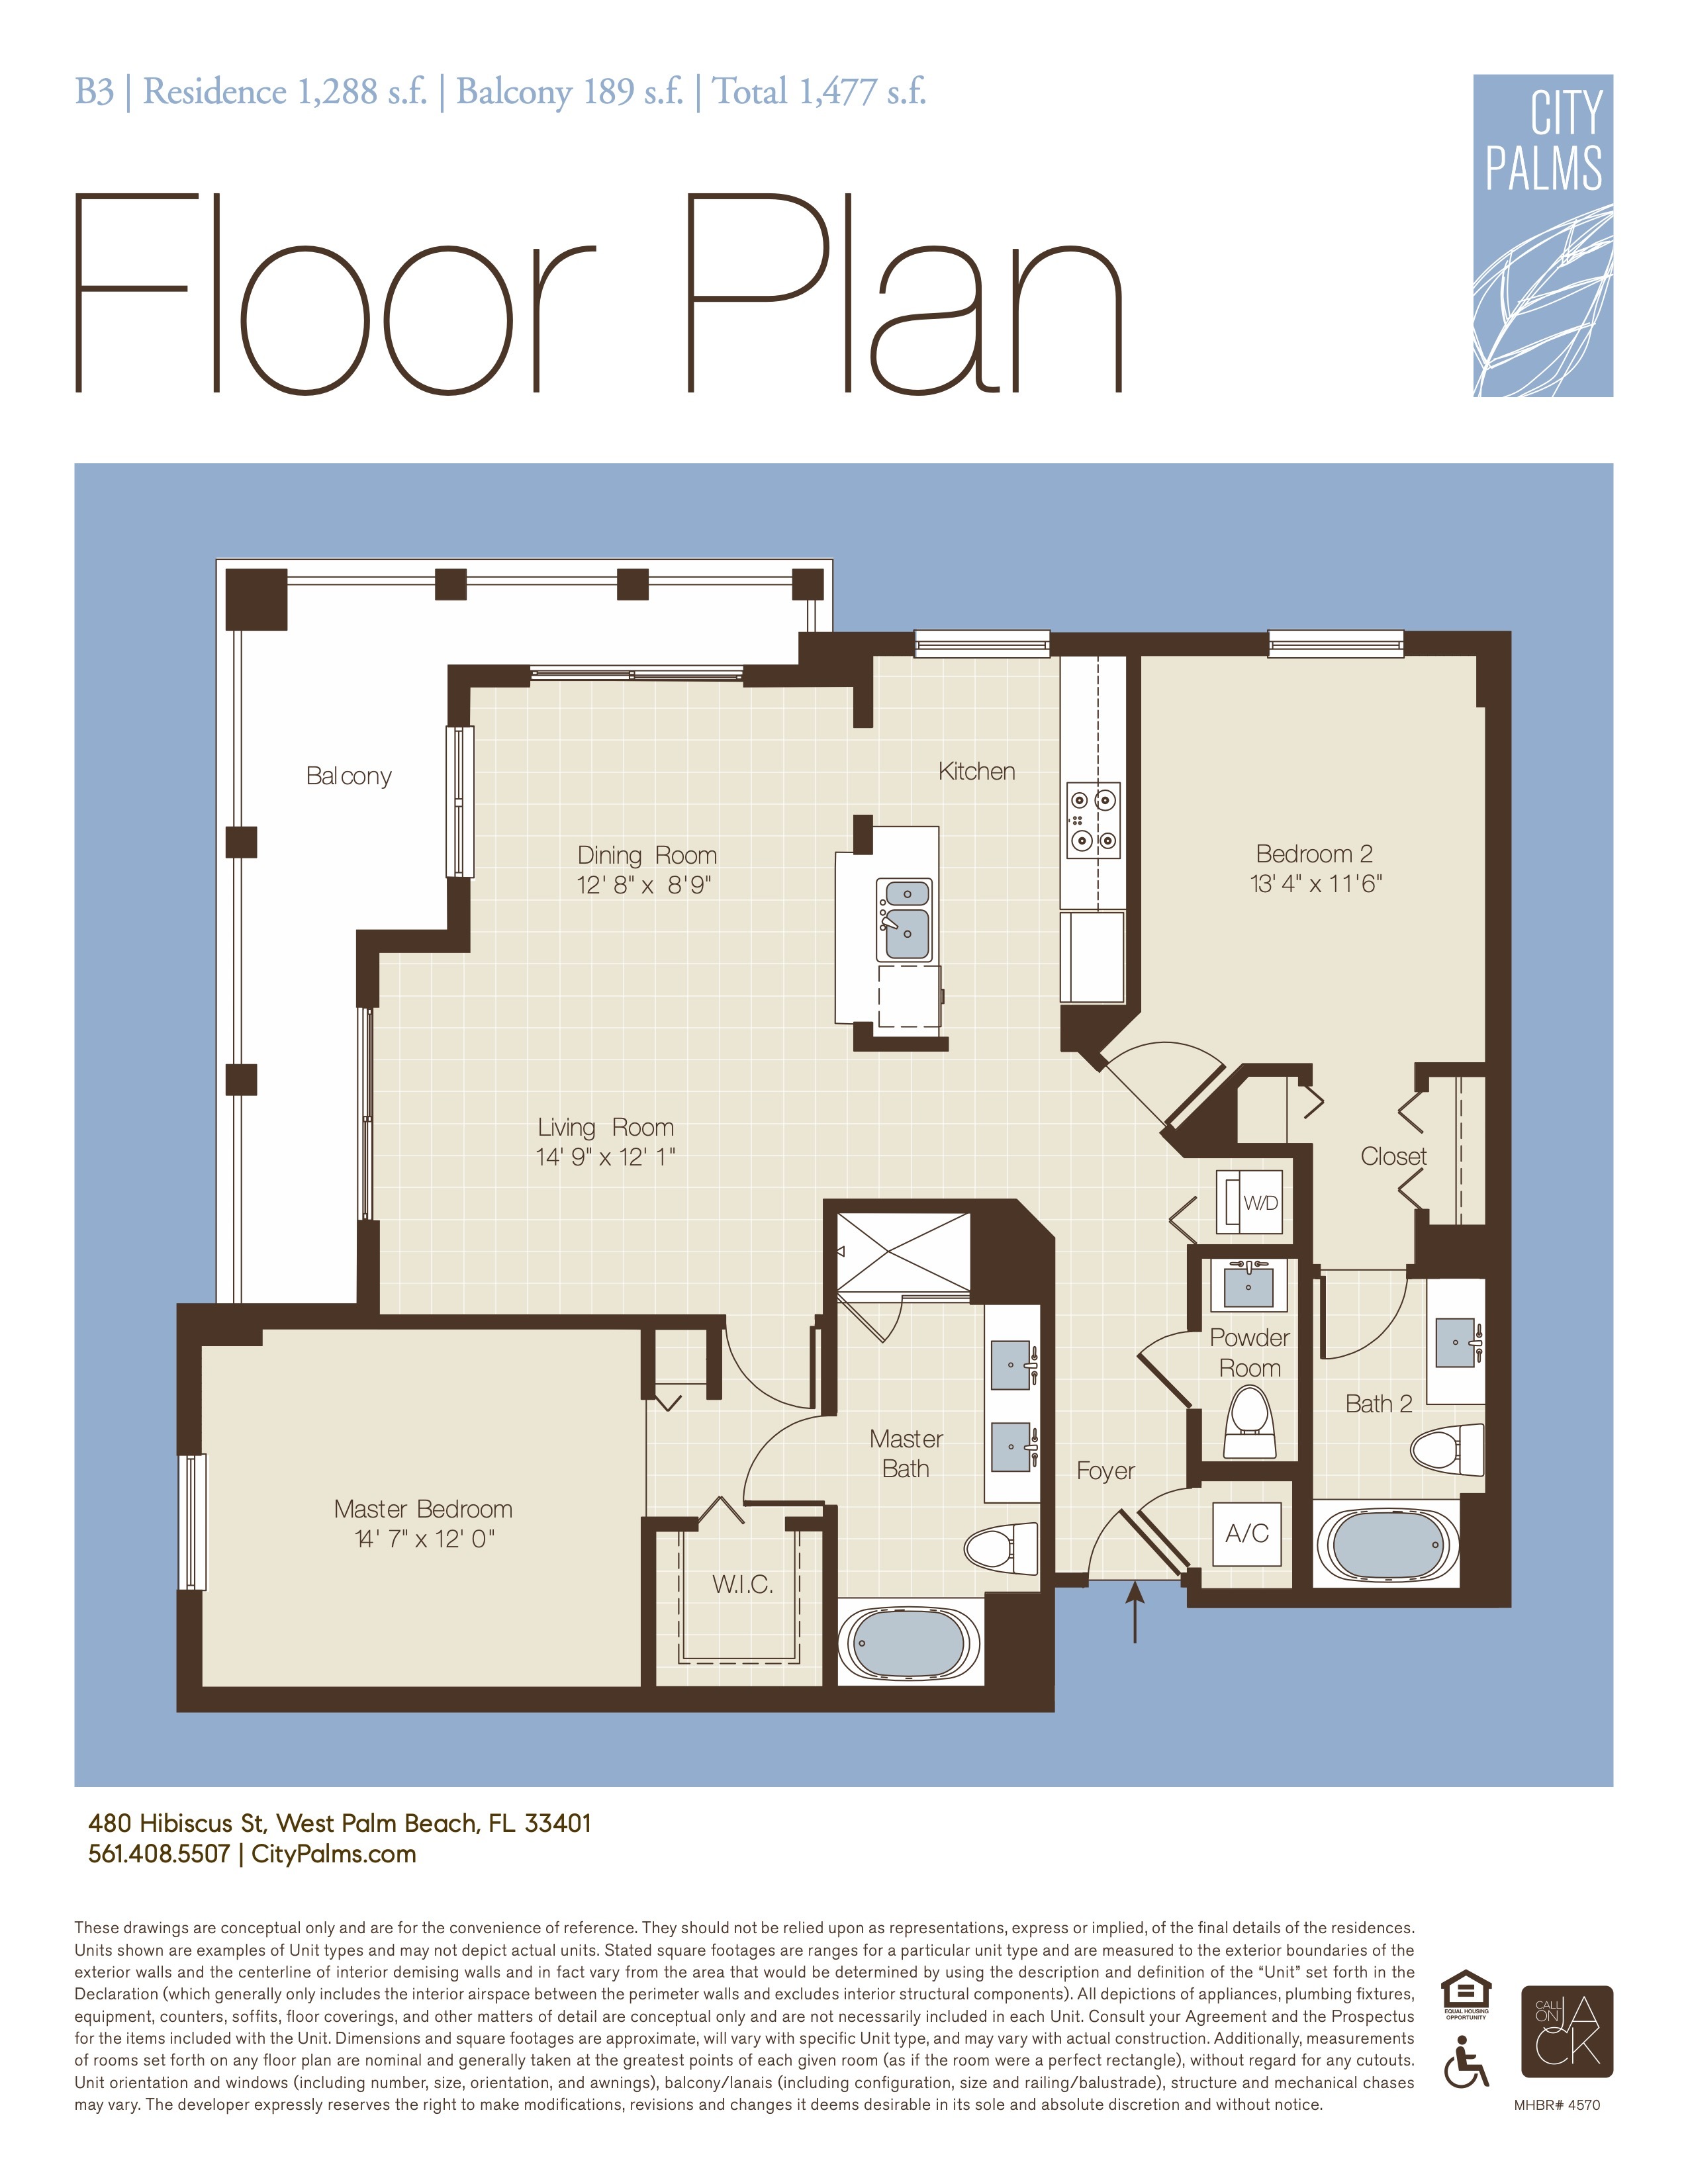 Floor Plan for CUSTOM_NO_CATEGORY_MODE, B3